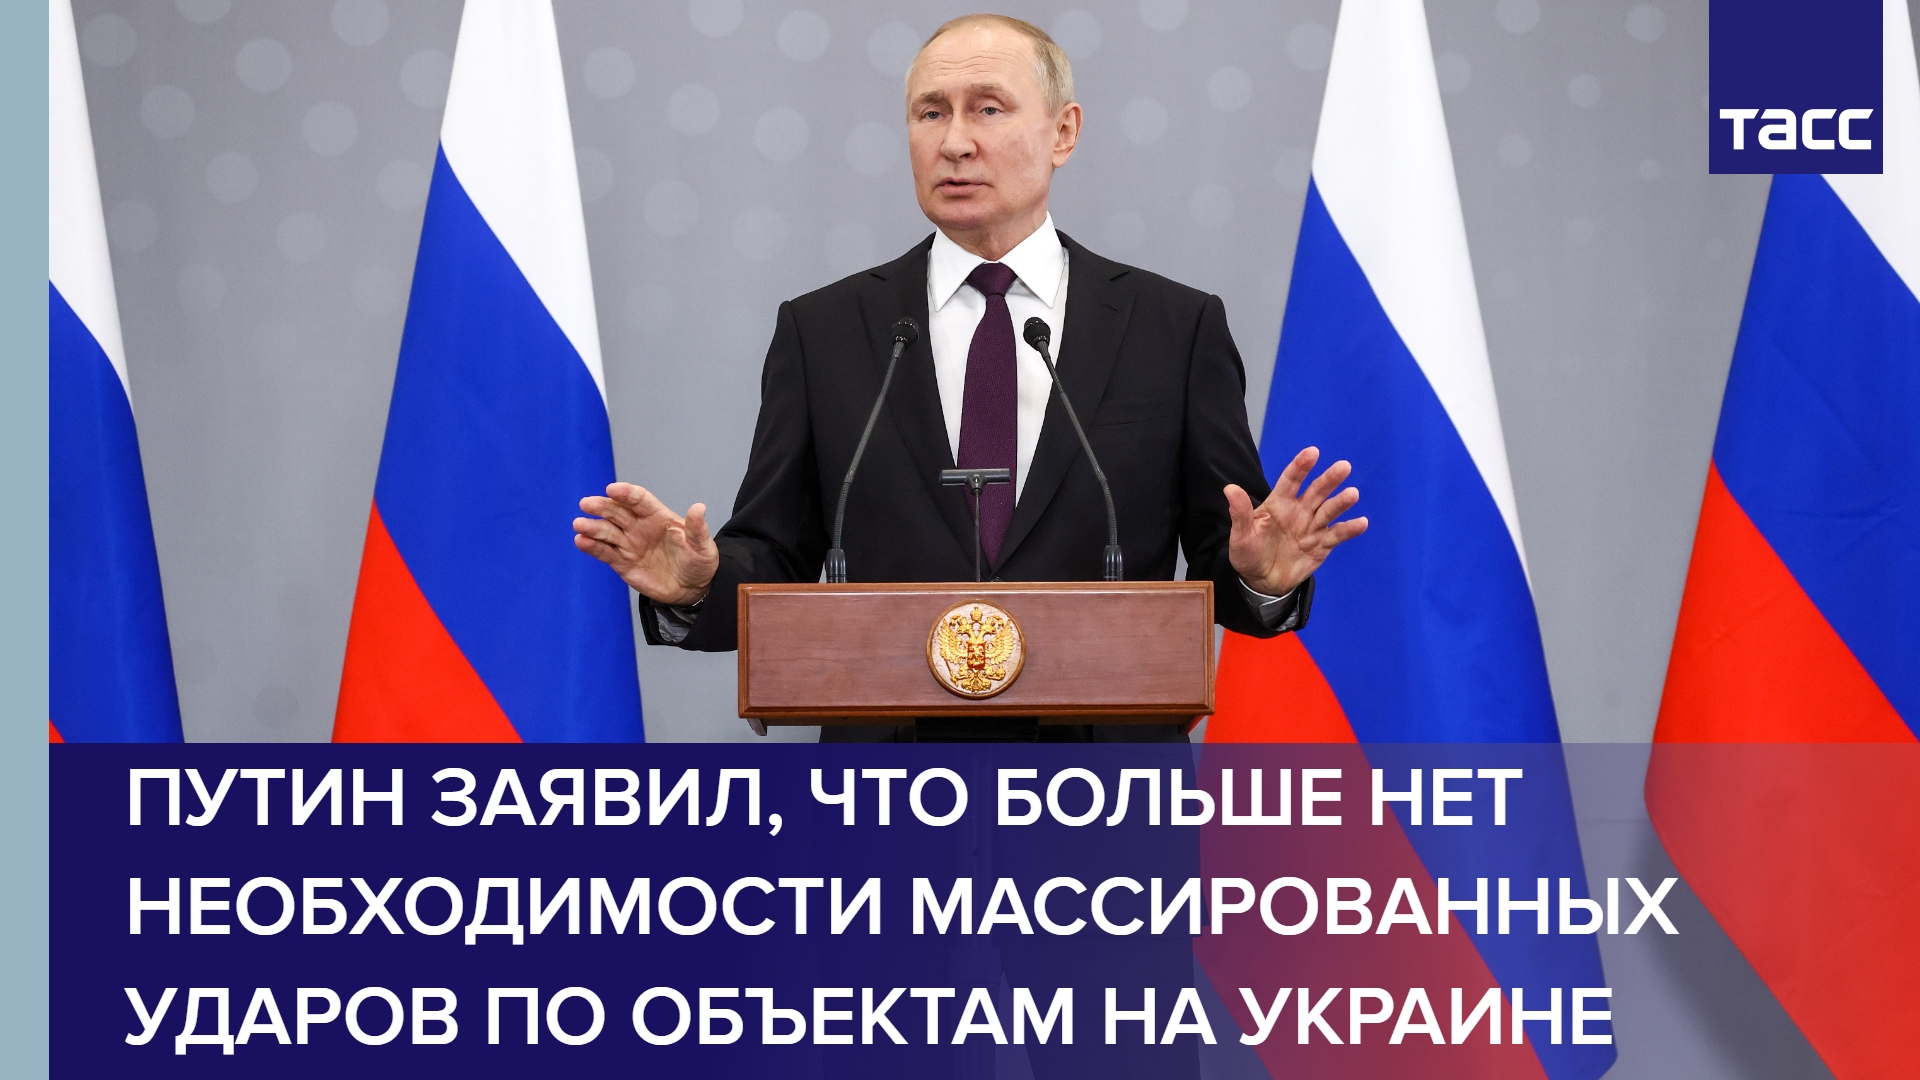 Путин заявил, что больше нет необходимости массированных ударов по объектам на Украине #shorts